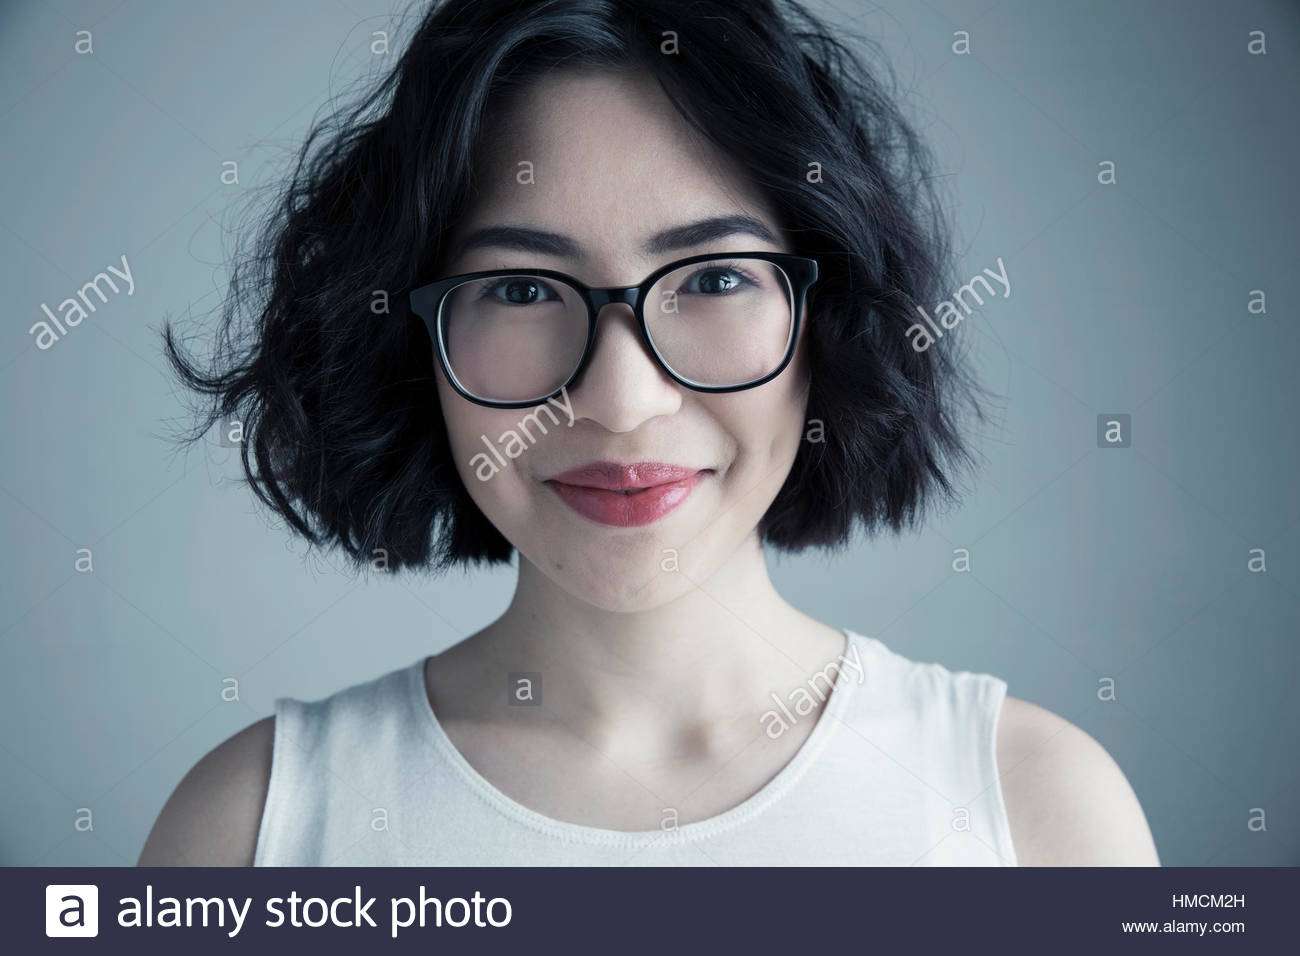 Close up ritratto sorridente razza mista giovane donna con i capelli neri e occhiali Foto Stock